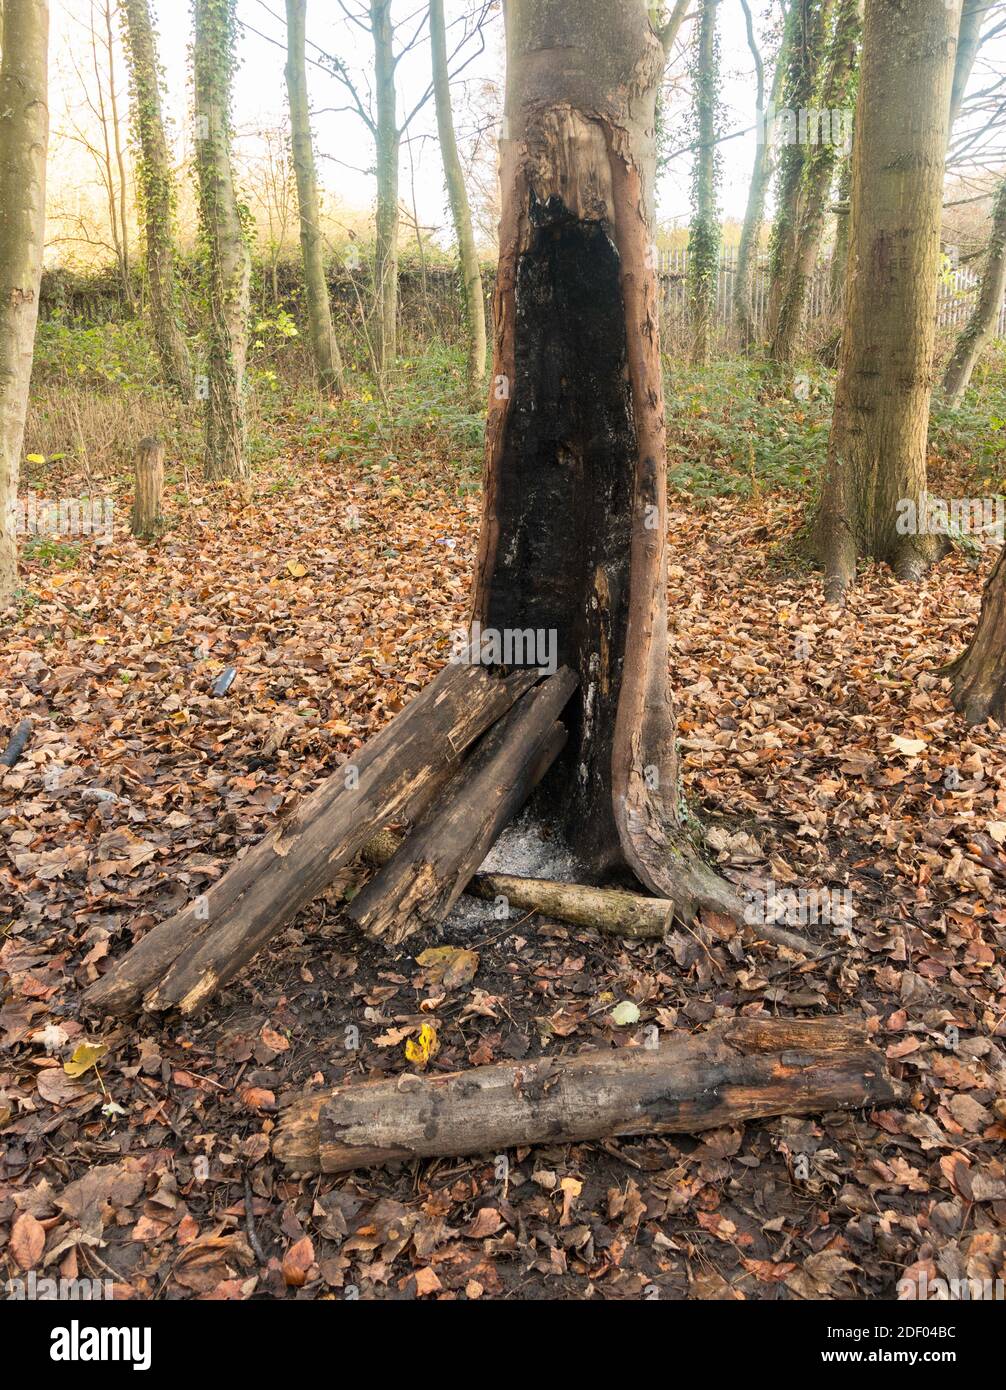 Vandalisme lié à un camping difficile, arbre vivant brûlé comme un feu de camp, Angleterre, Royaume-Uni Banque D'Images